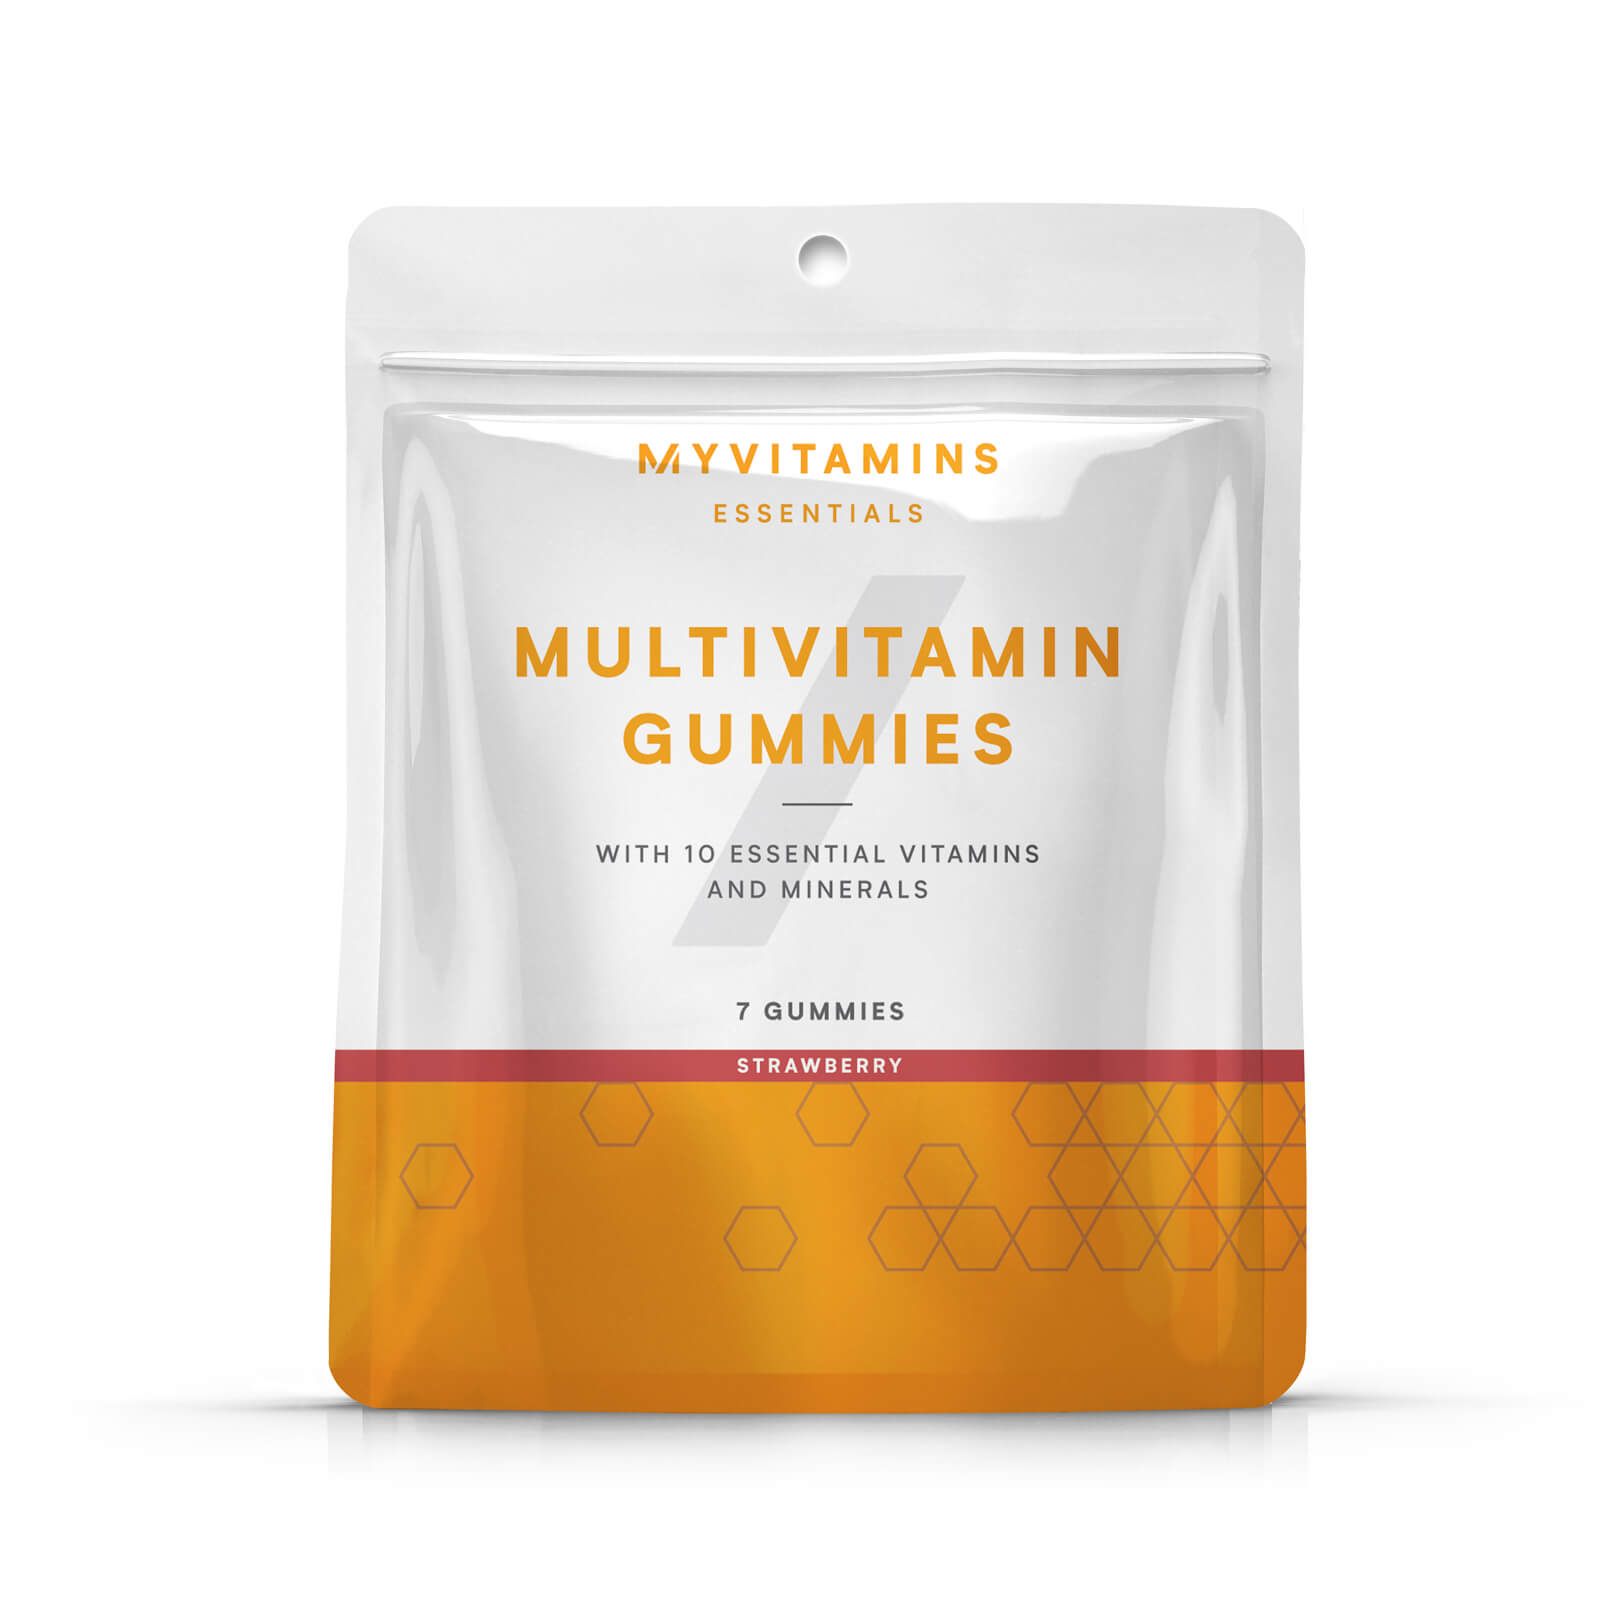 Myvitamins Multivitamin Gummy Sample Pouch - 7gummies - Jagoda